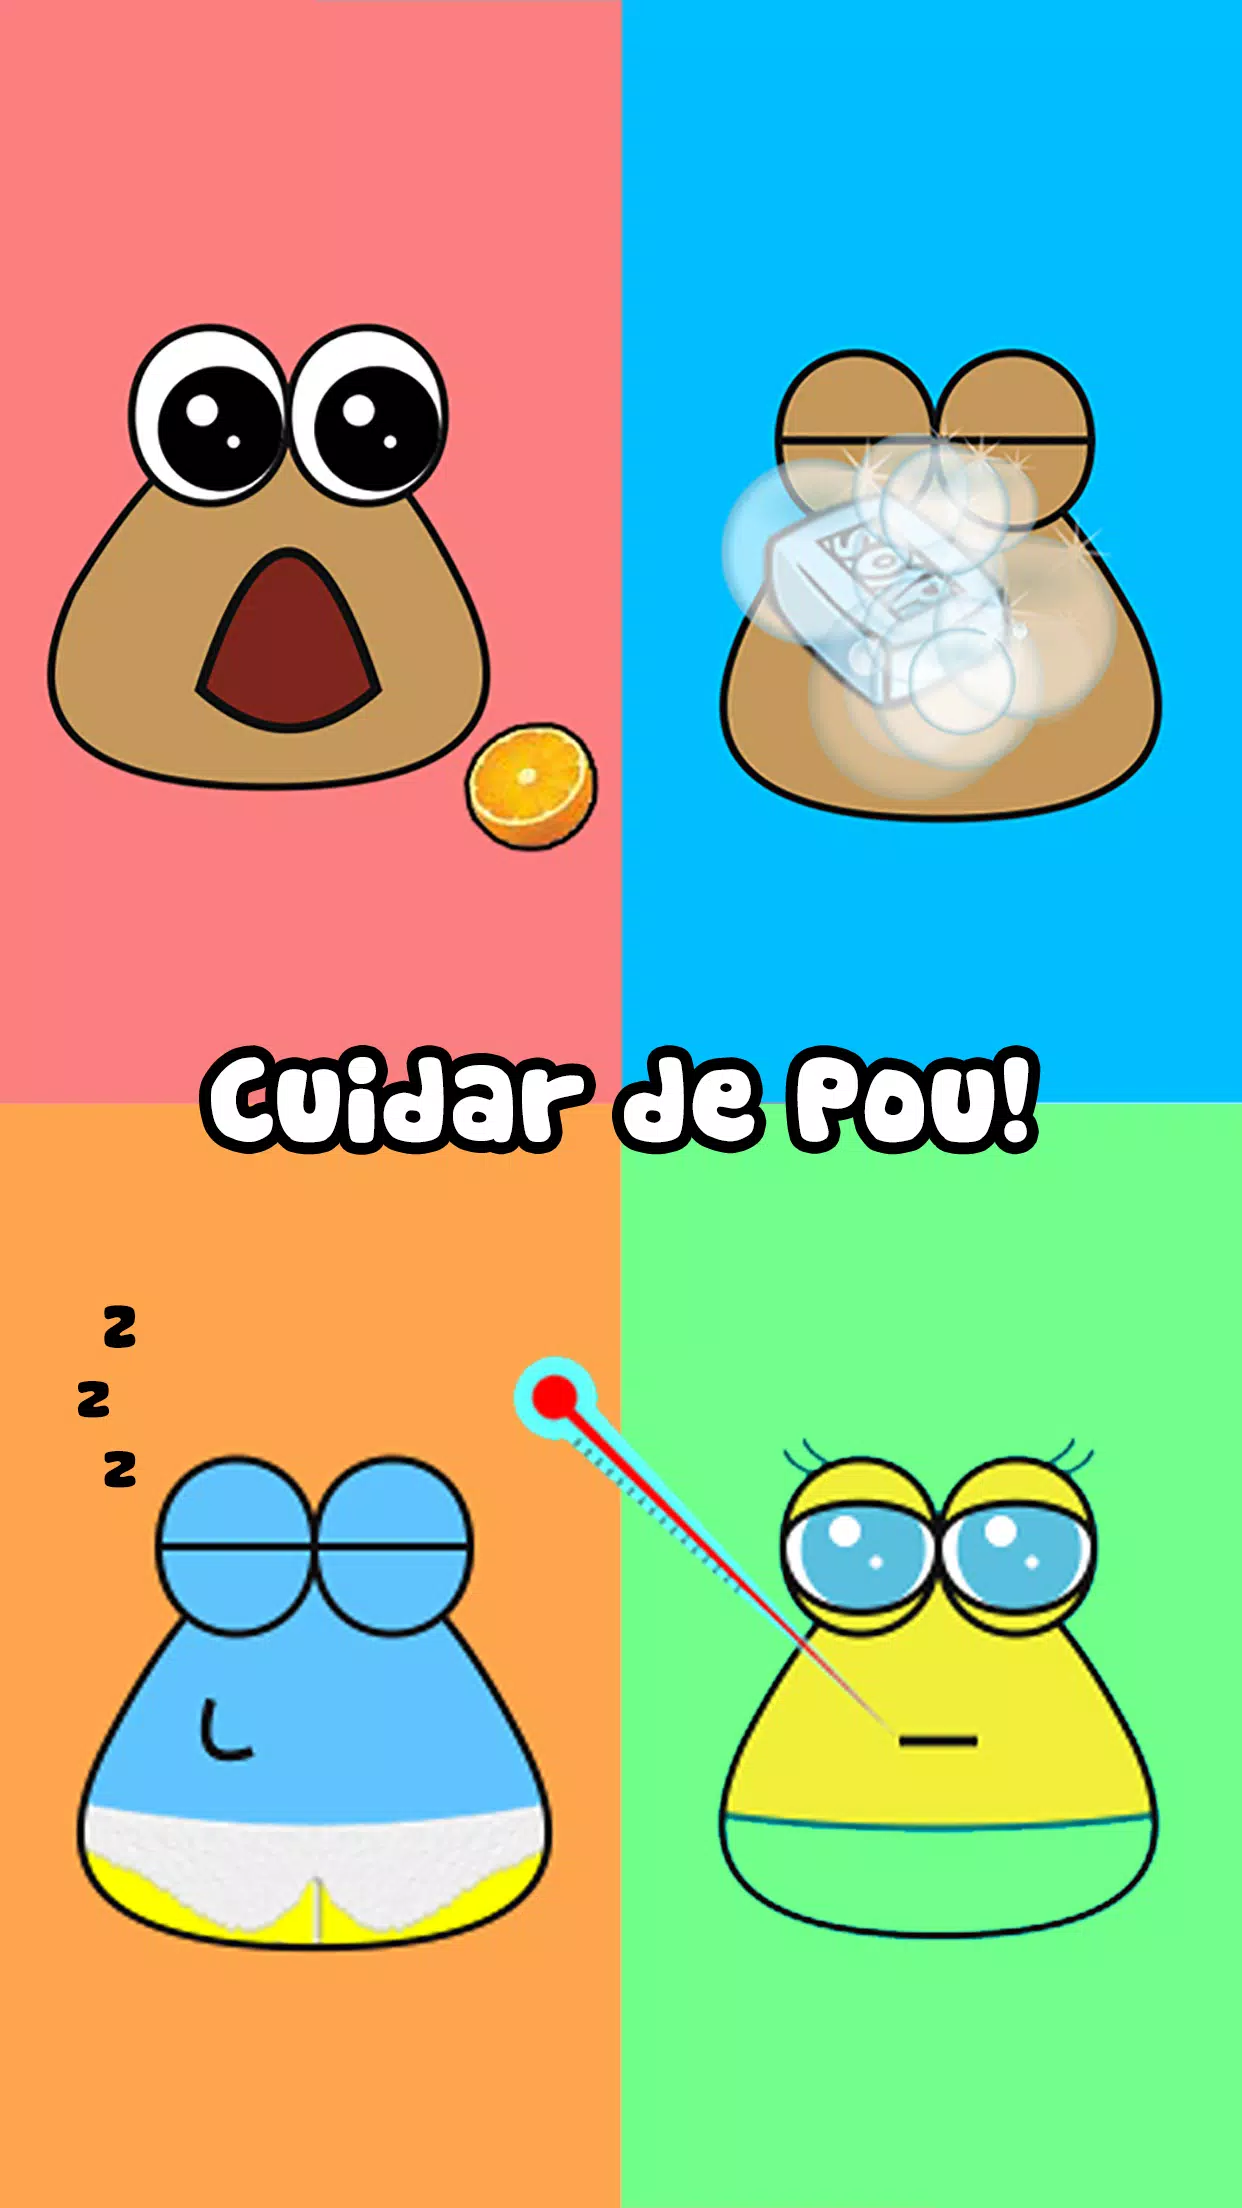 Juegos de Pou - Juega con Pou gratis en Minijuegos